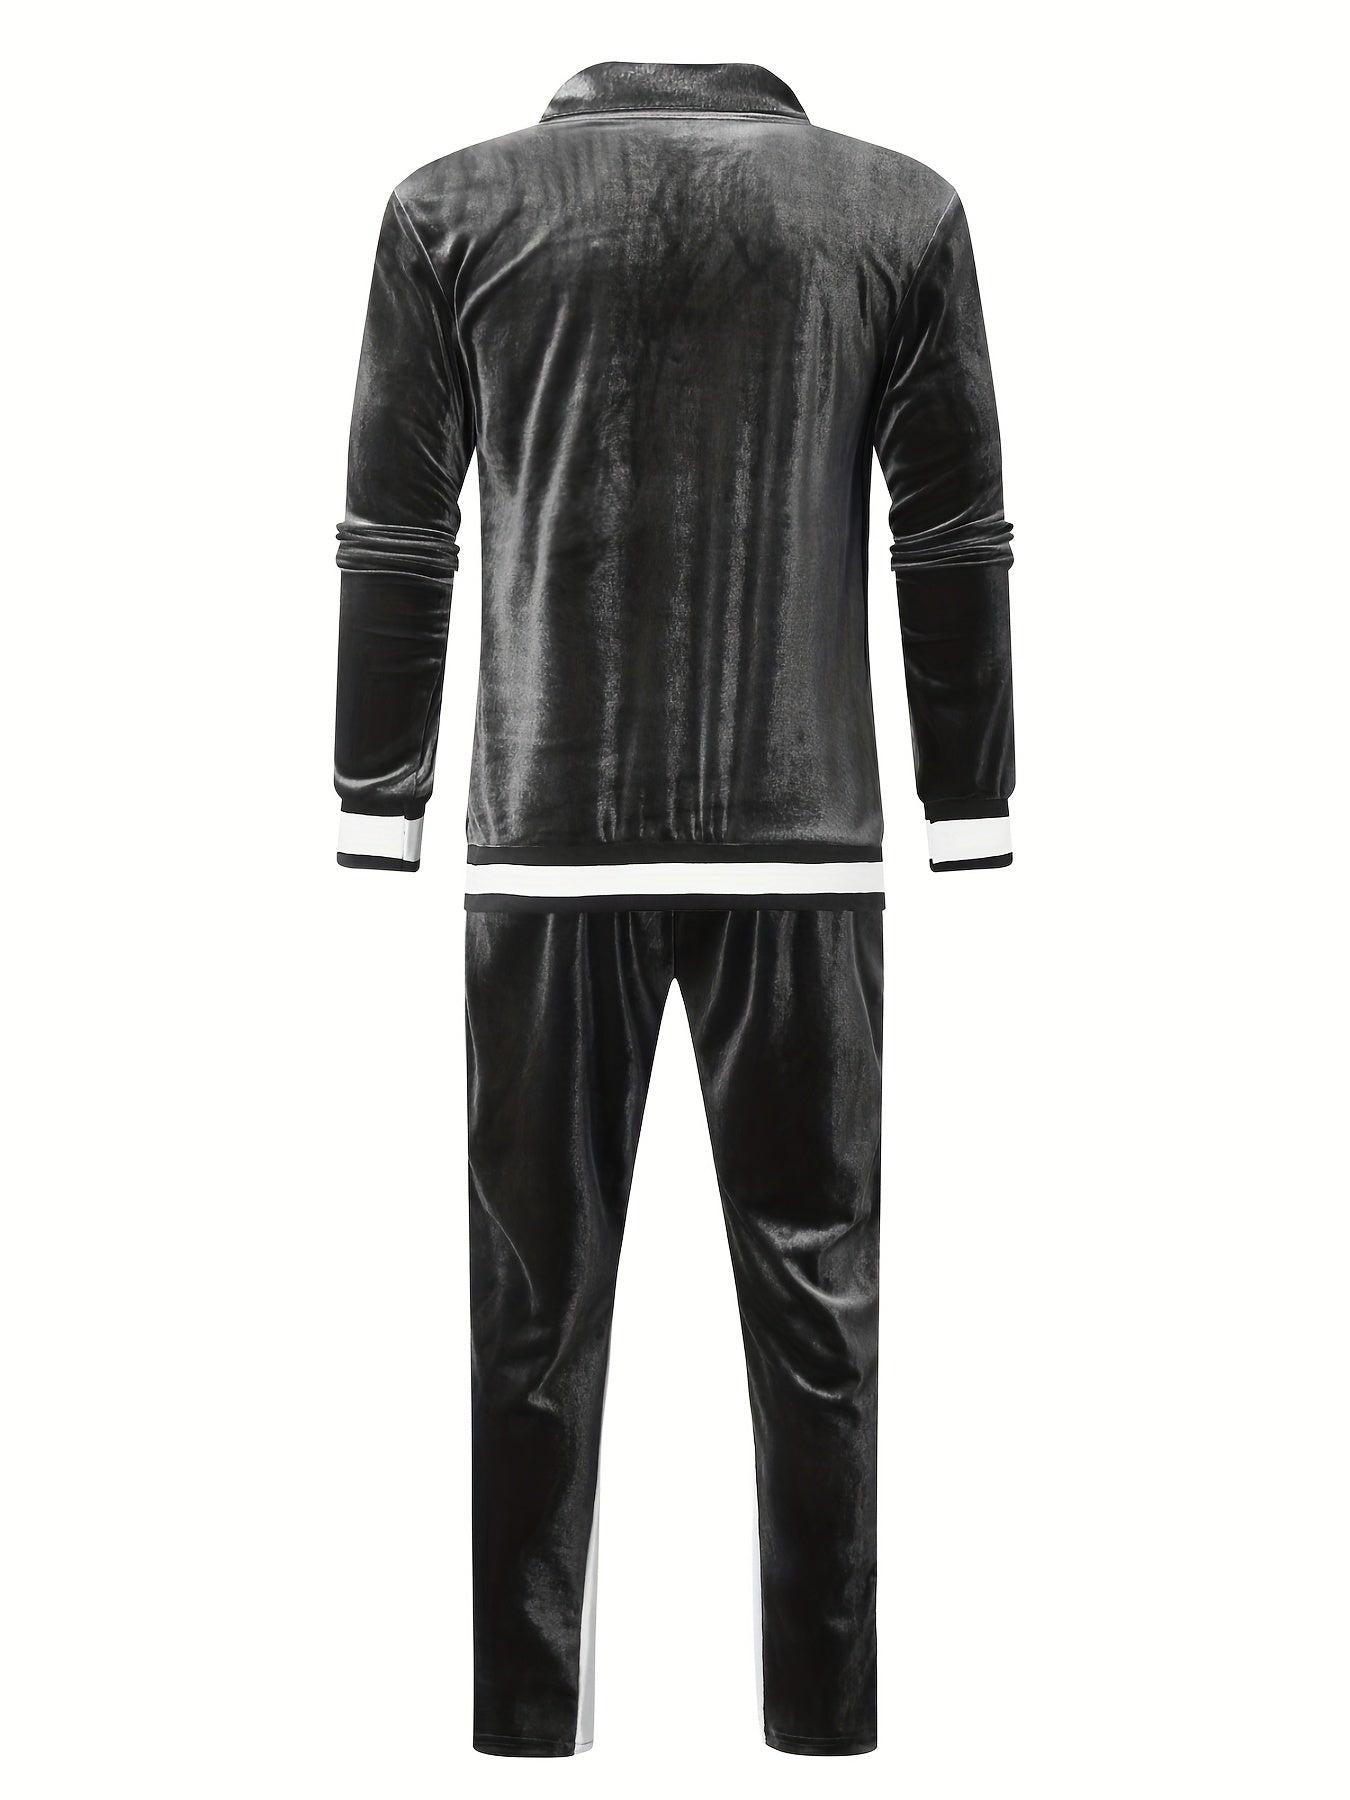 Premium Velvet Training Suit Set for Men - Luxurious and Versatile